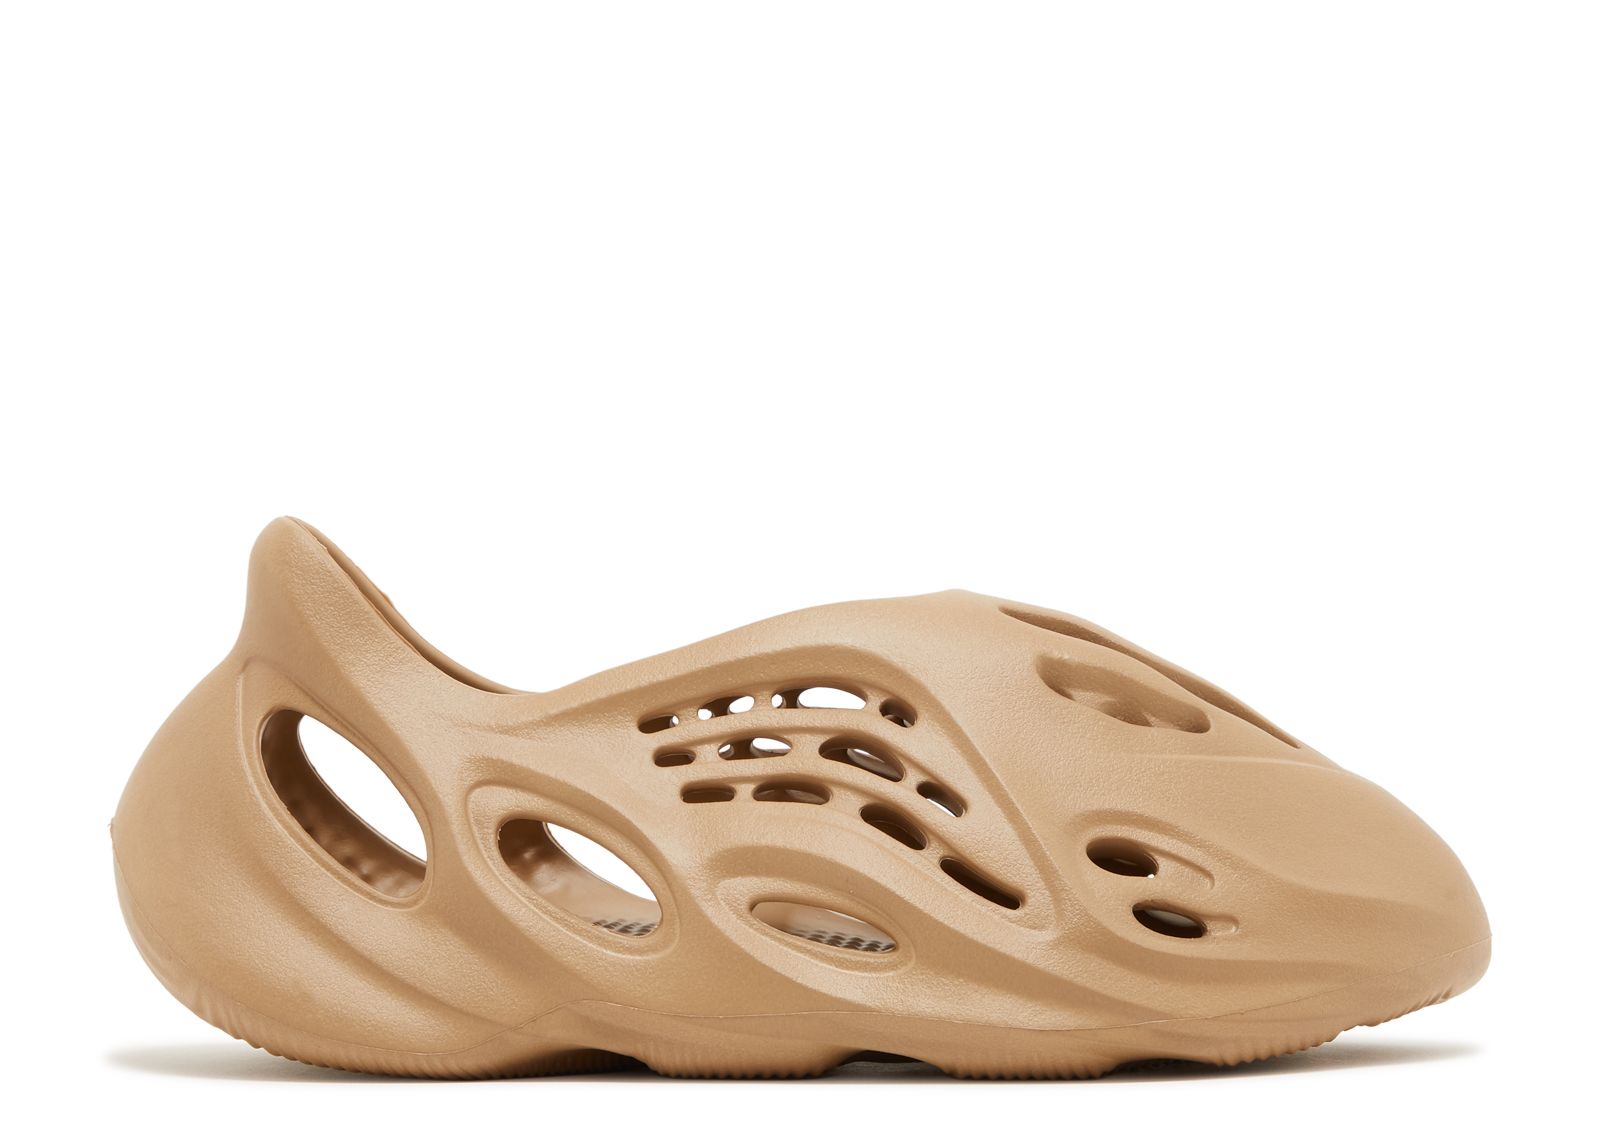 Кроссовки adidas Yeezy Foam Runner 'Clay Taupe', кремовый